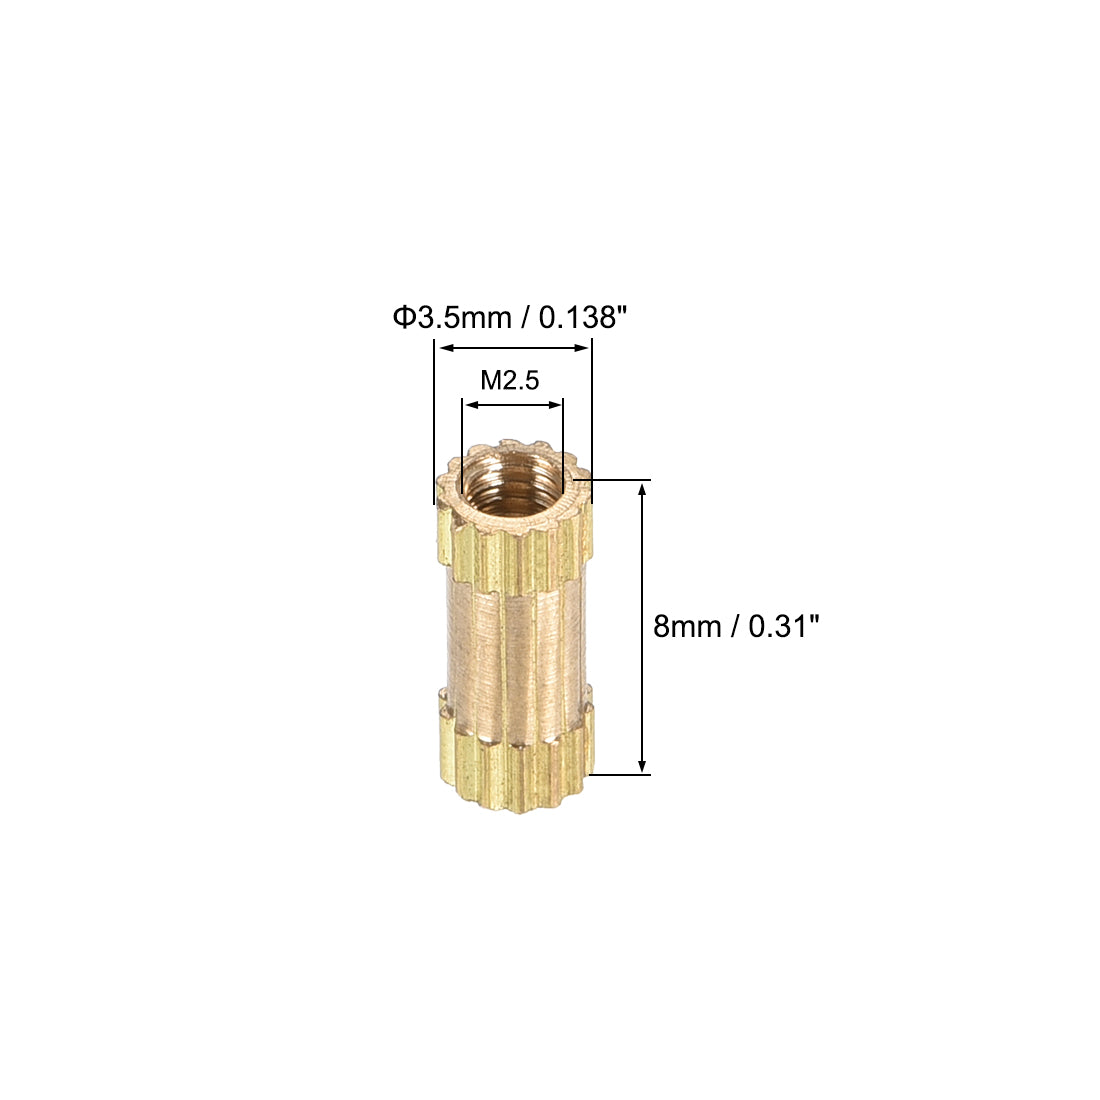 uxcell Uxcell Knurled Insert Nuts, M2.5 x 8mm(L) x 3.5mm(OD) Female Thread Brass Embedment Assortment Kit, 50 Pcs